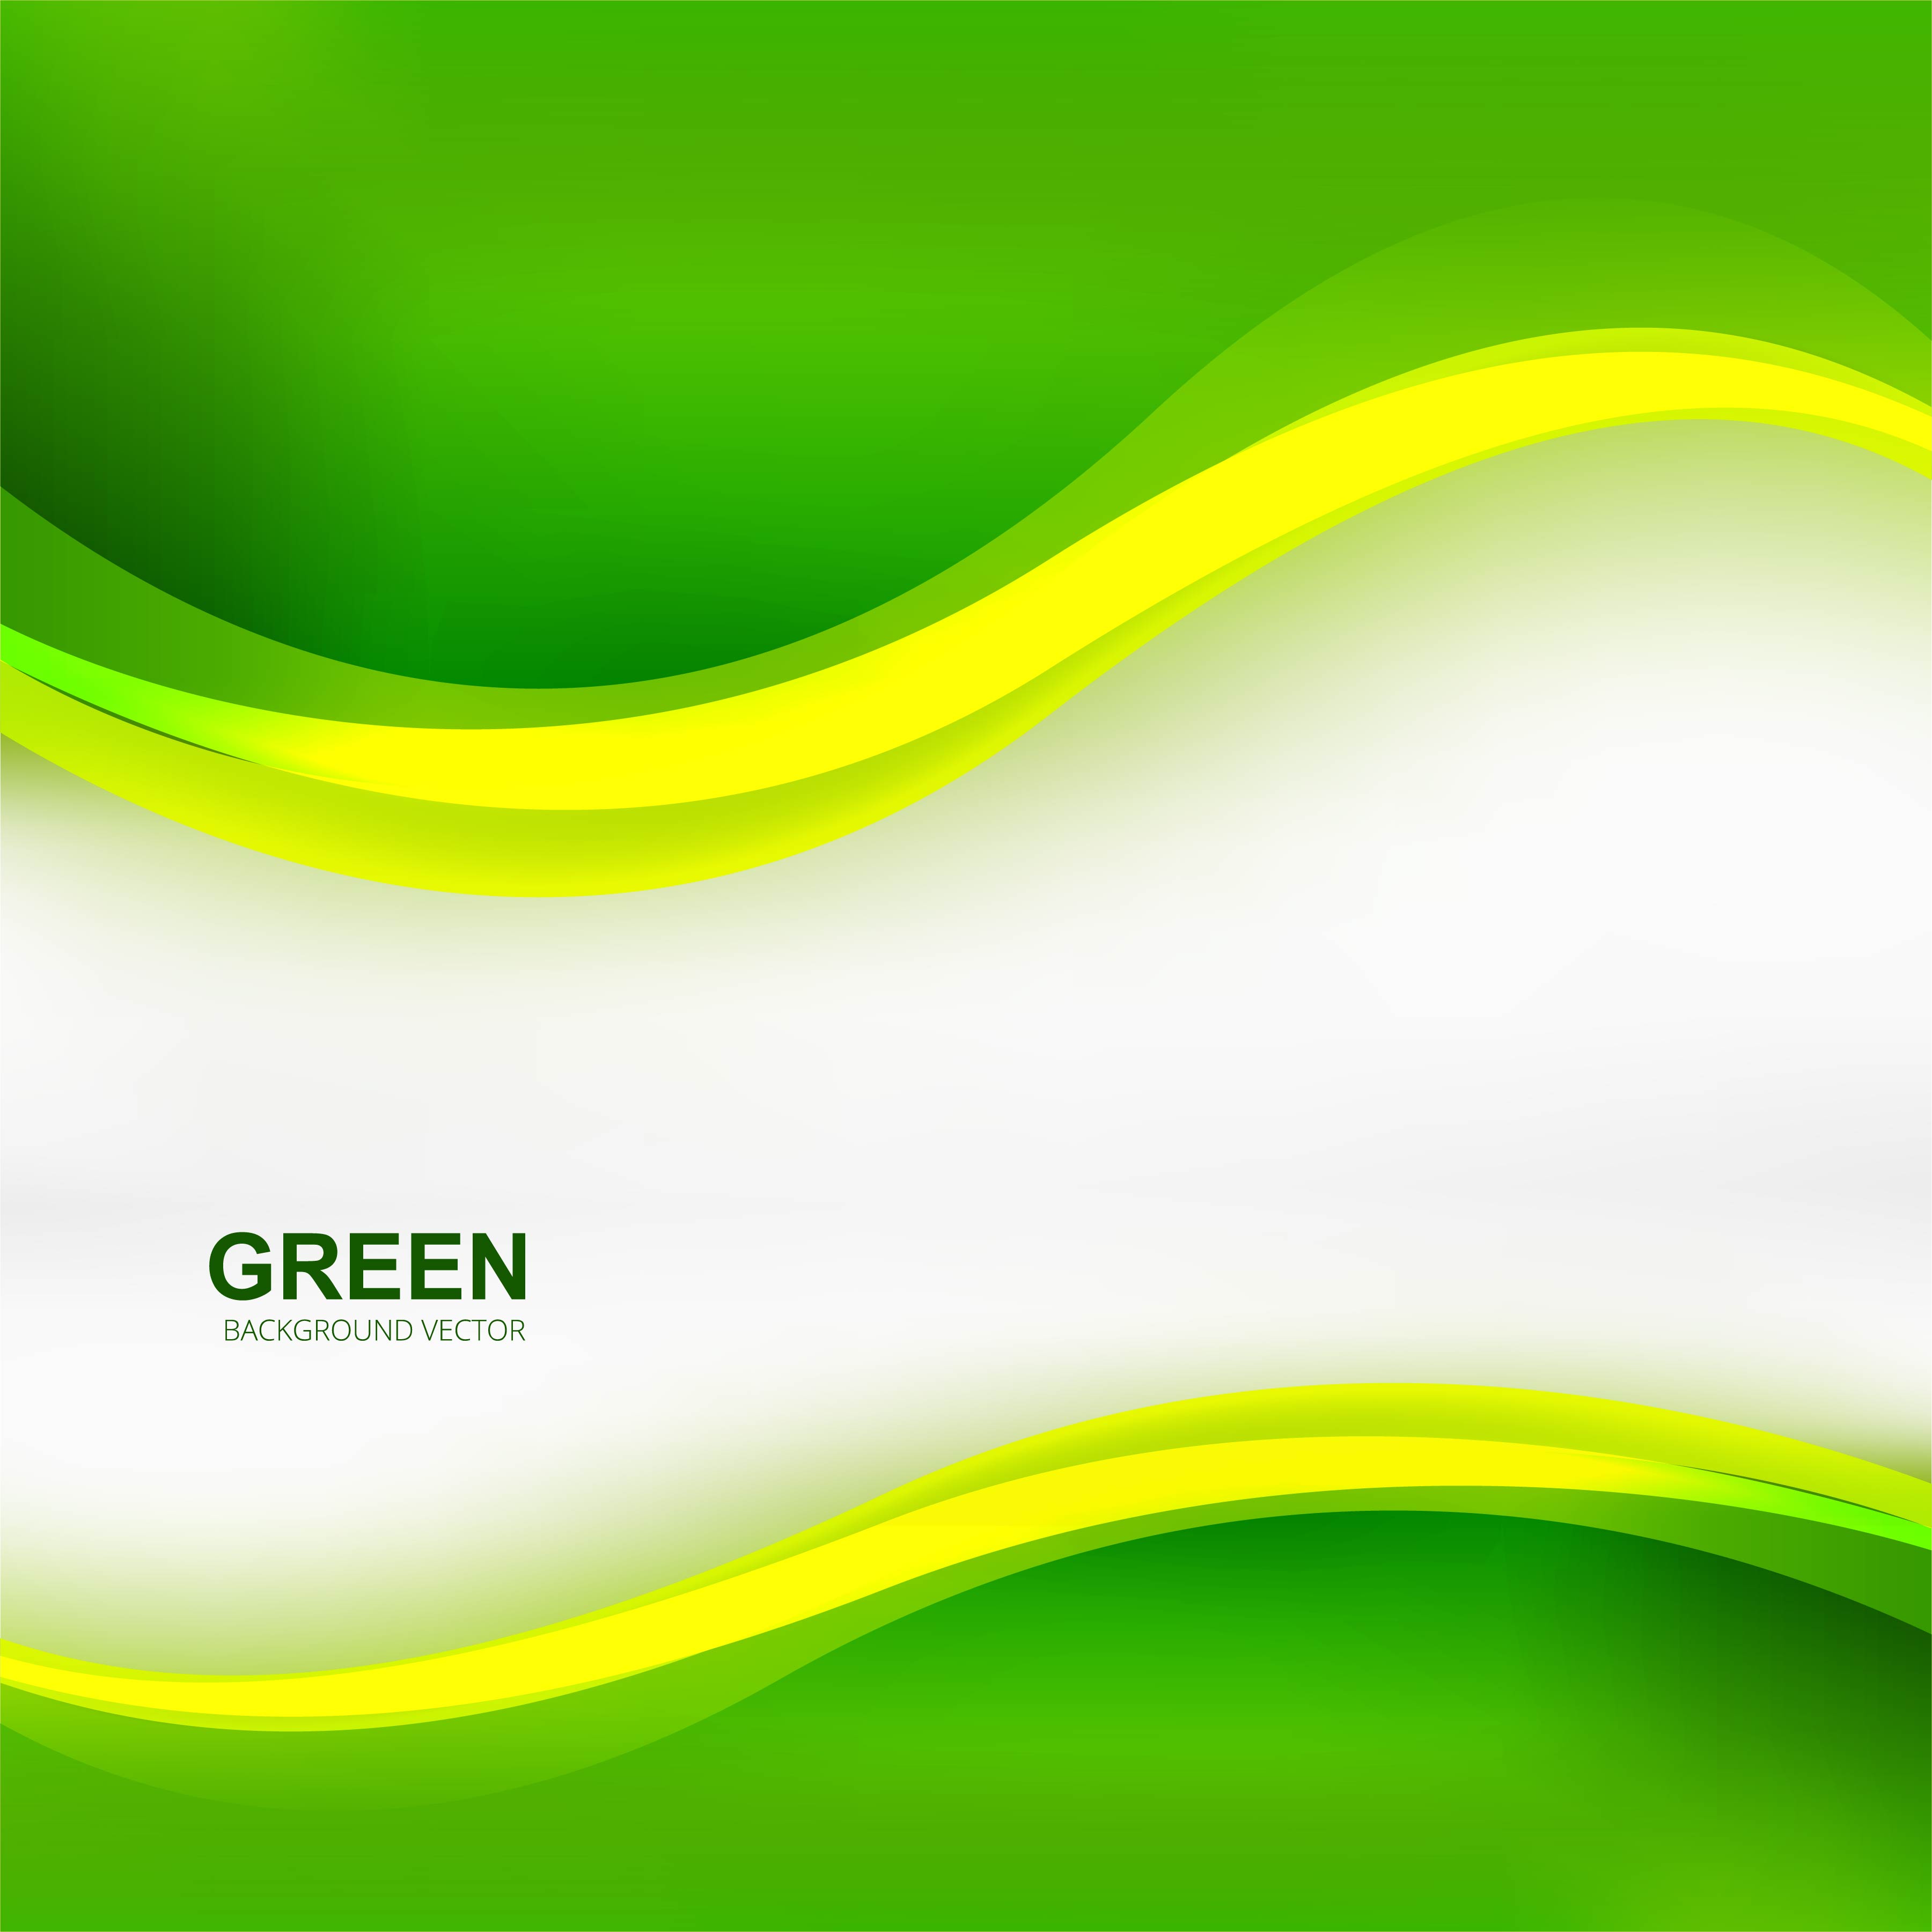 Với những hình nền sóng màu xanh lá cây vector miễn phí, không còn gì tuyệt vời bằng việc đưa thiên nhiên vào những thiết kế của bạn. Chúng tôi cung cấp những hình ảnh vector chất lượng cao, giúp cho bức tranh tổng thể của bạn trở nên rực rỡ và sinh động hơn.